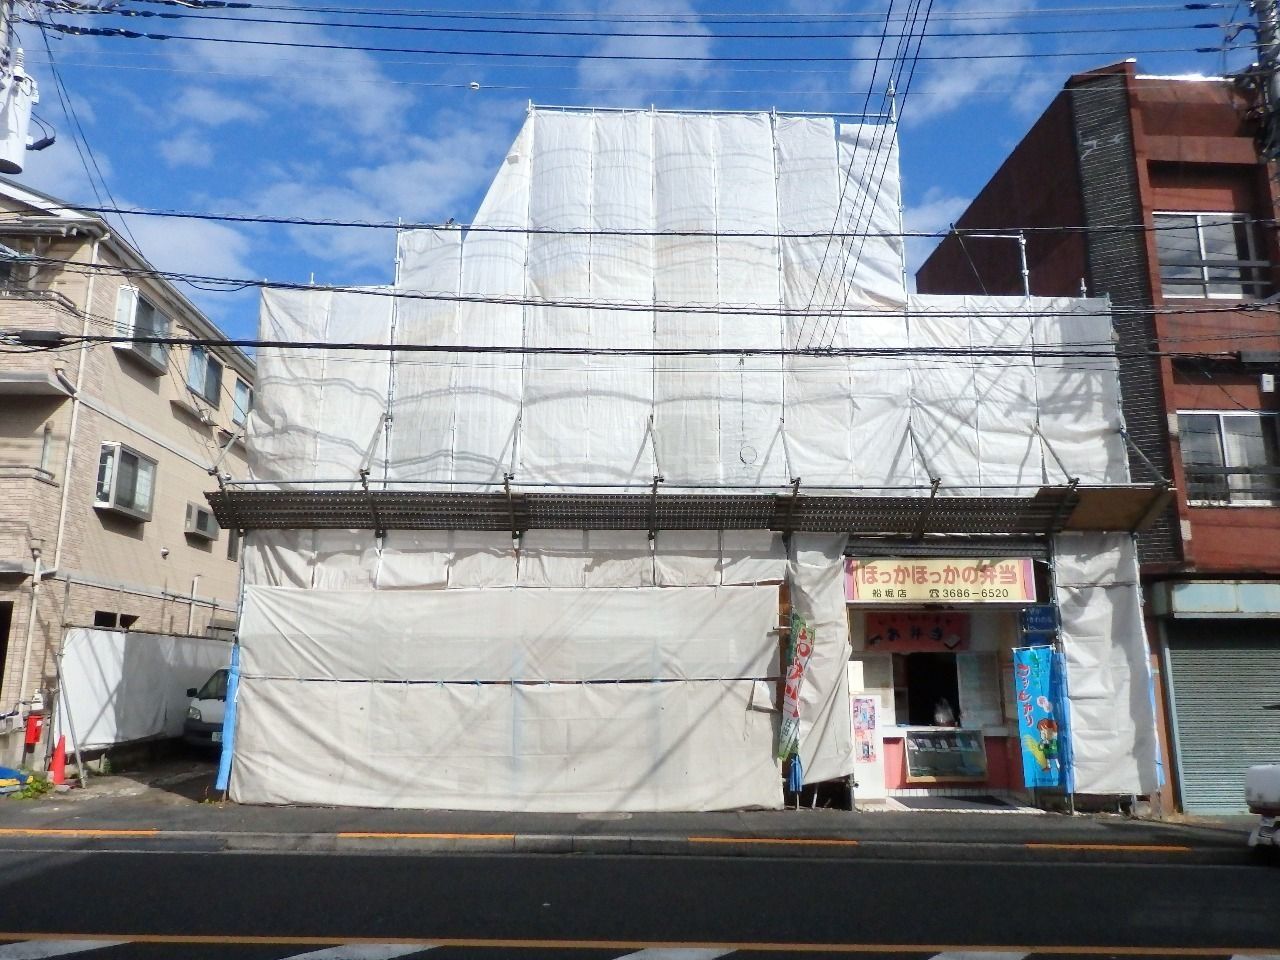 船堀7丁目古アパート再生計画「ほぼ新築さん」21